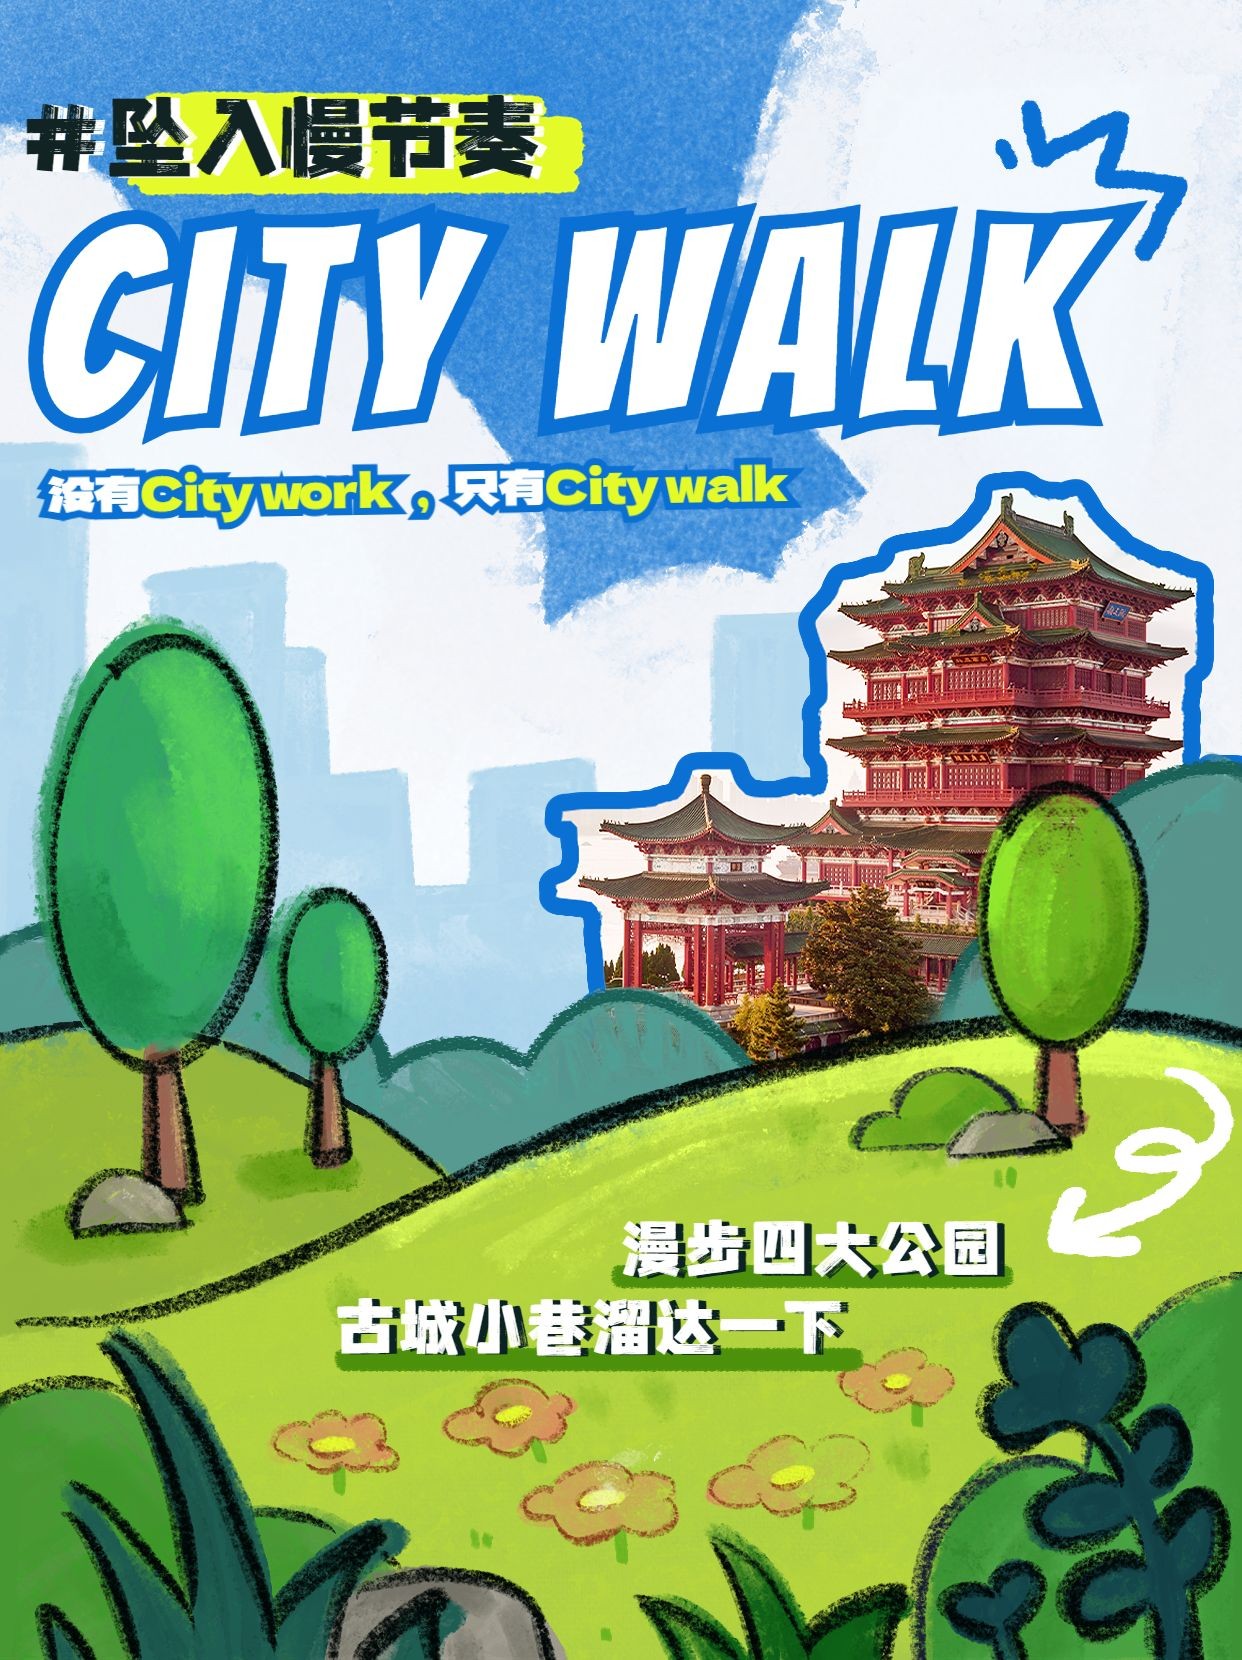 City walk旅馆攻略描边手绘插画系列小红书配图